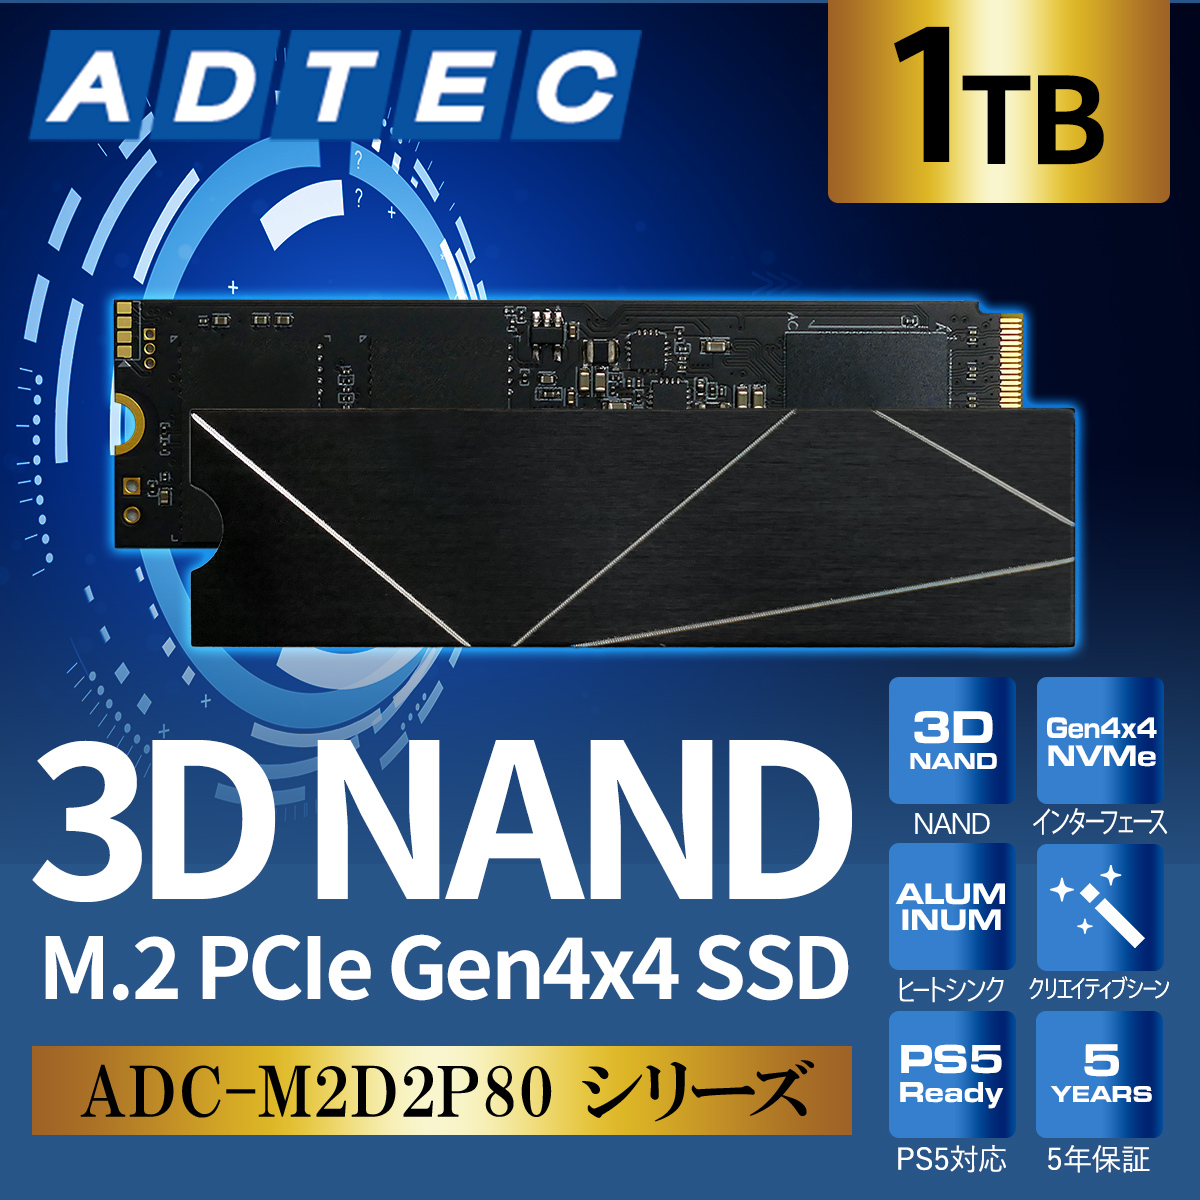 3D NAND M.2 PCIe Gen4x4 SSD ADC-M2D2P80 シリーズ - 株式会社アドテック